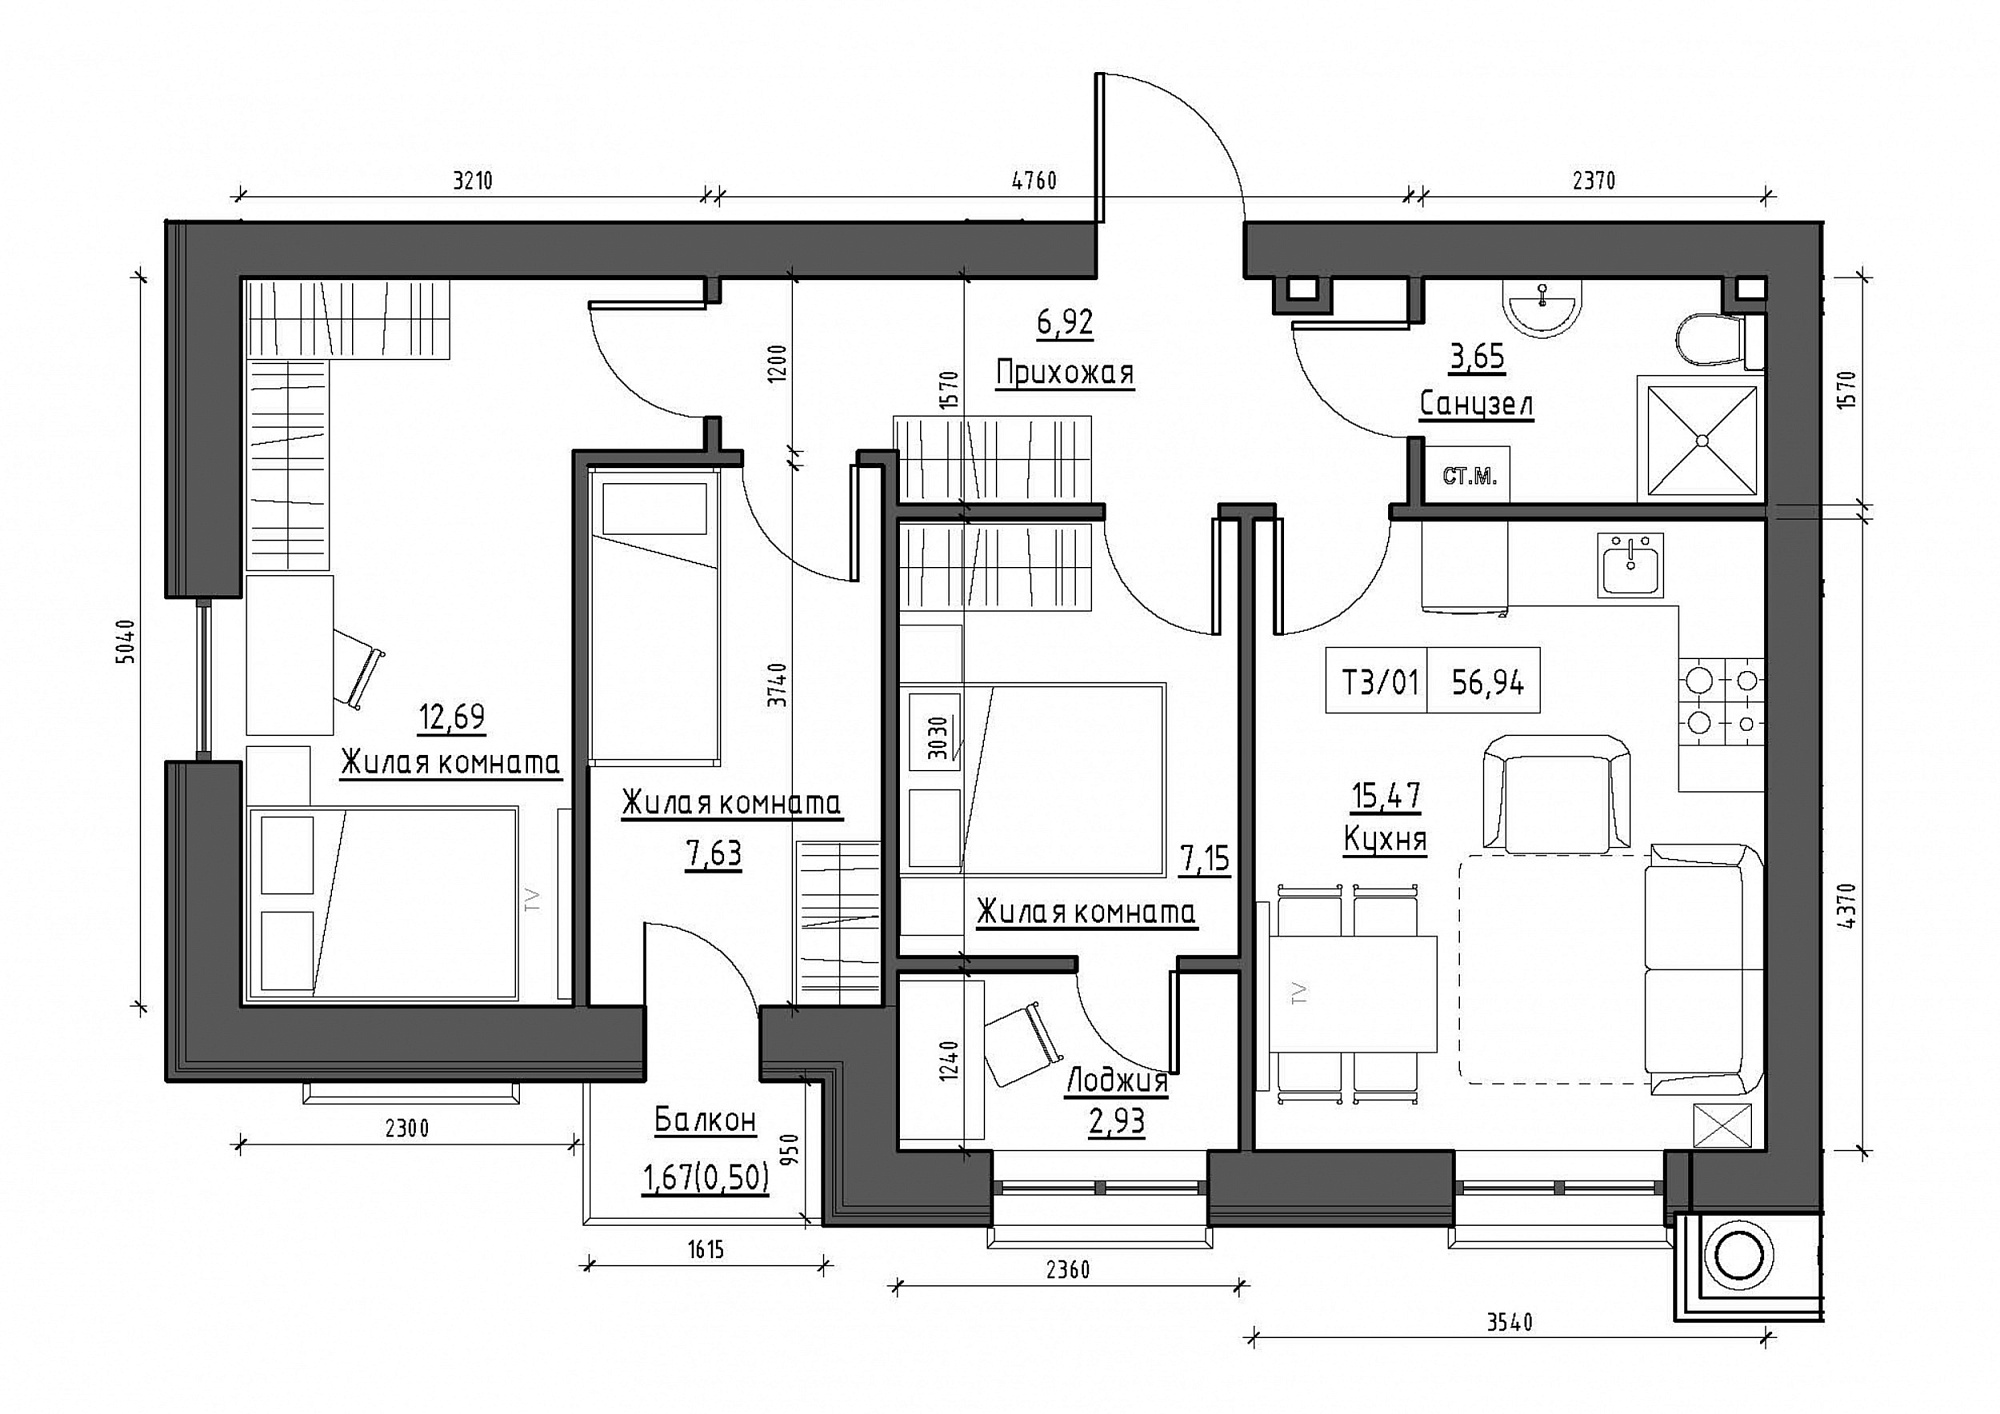 Планування 3-к квартира площею 56.94м2, KS-012-03/0008.